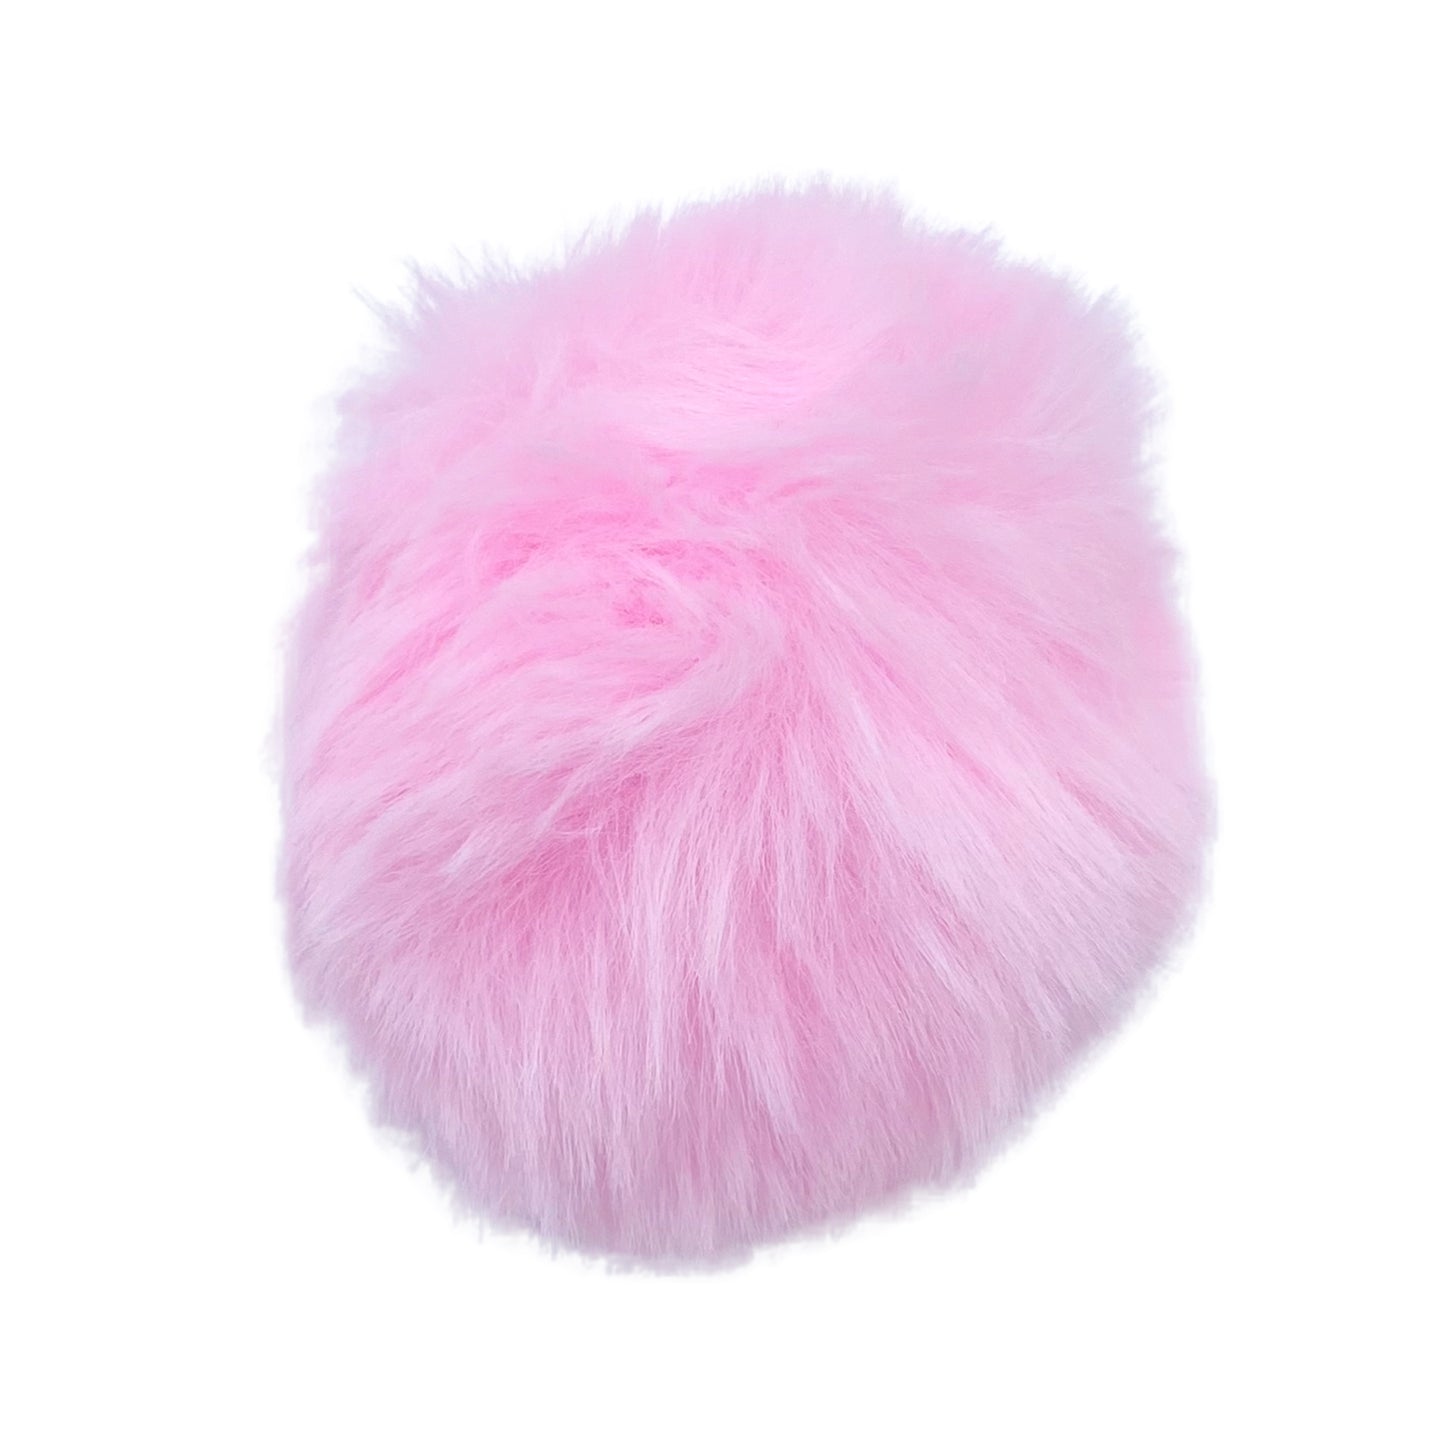 3" Fur Ball | Pom Pom Puff